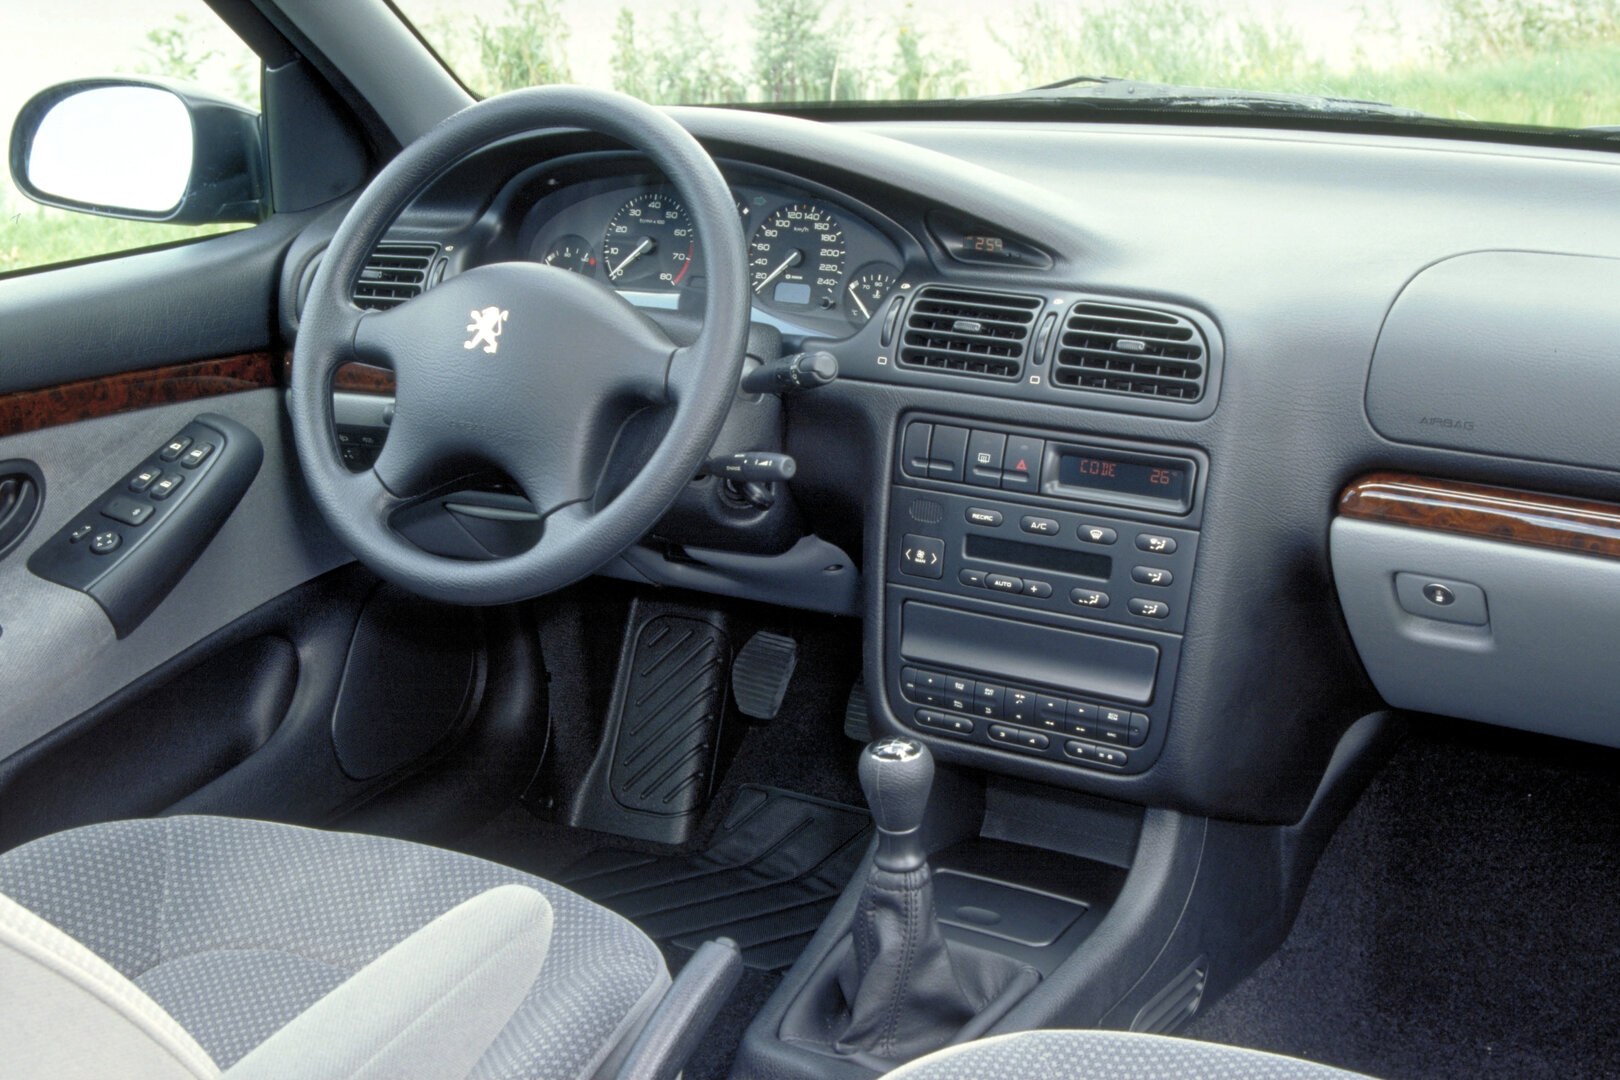 Peugeot 406 interior 1995